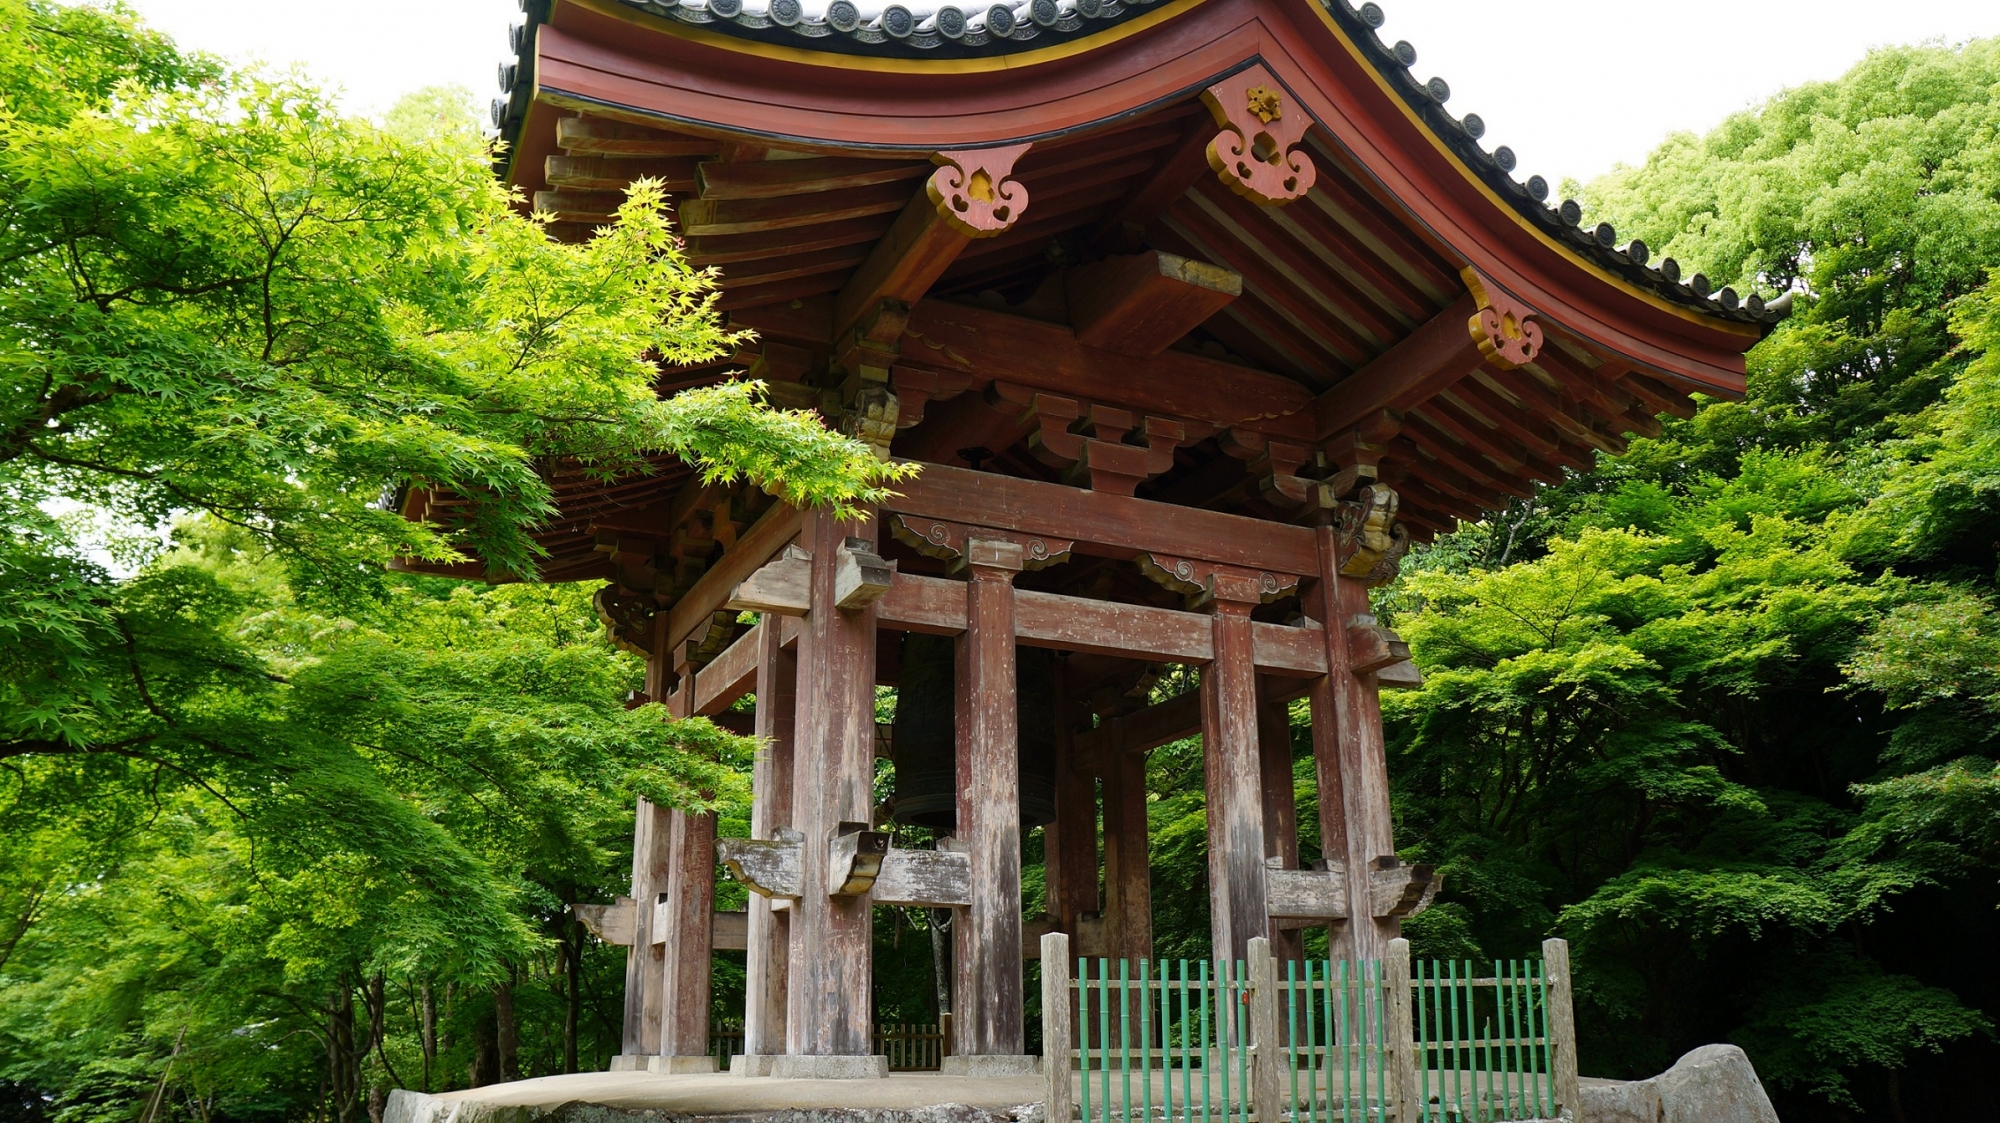 世界文化遺産の醍醐寺の鐘楼